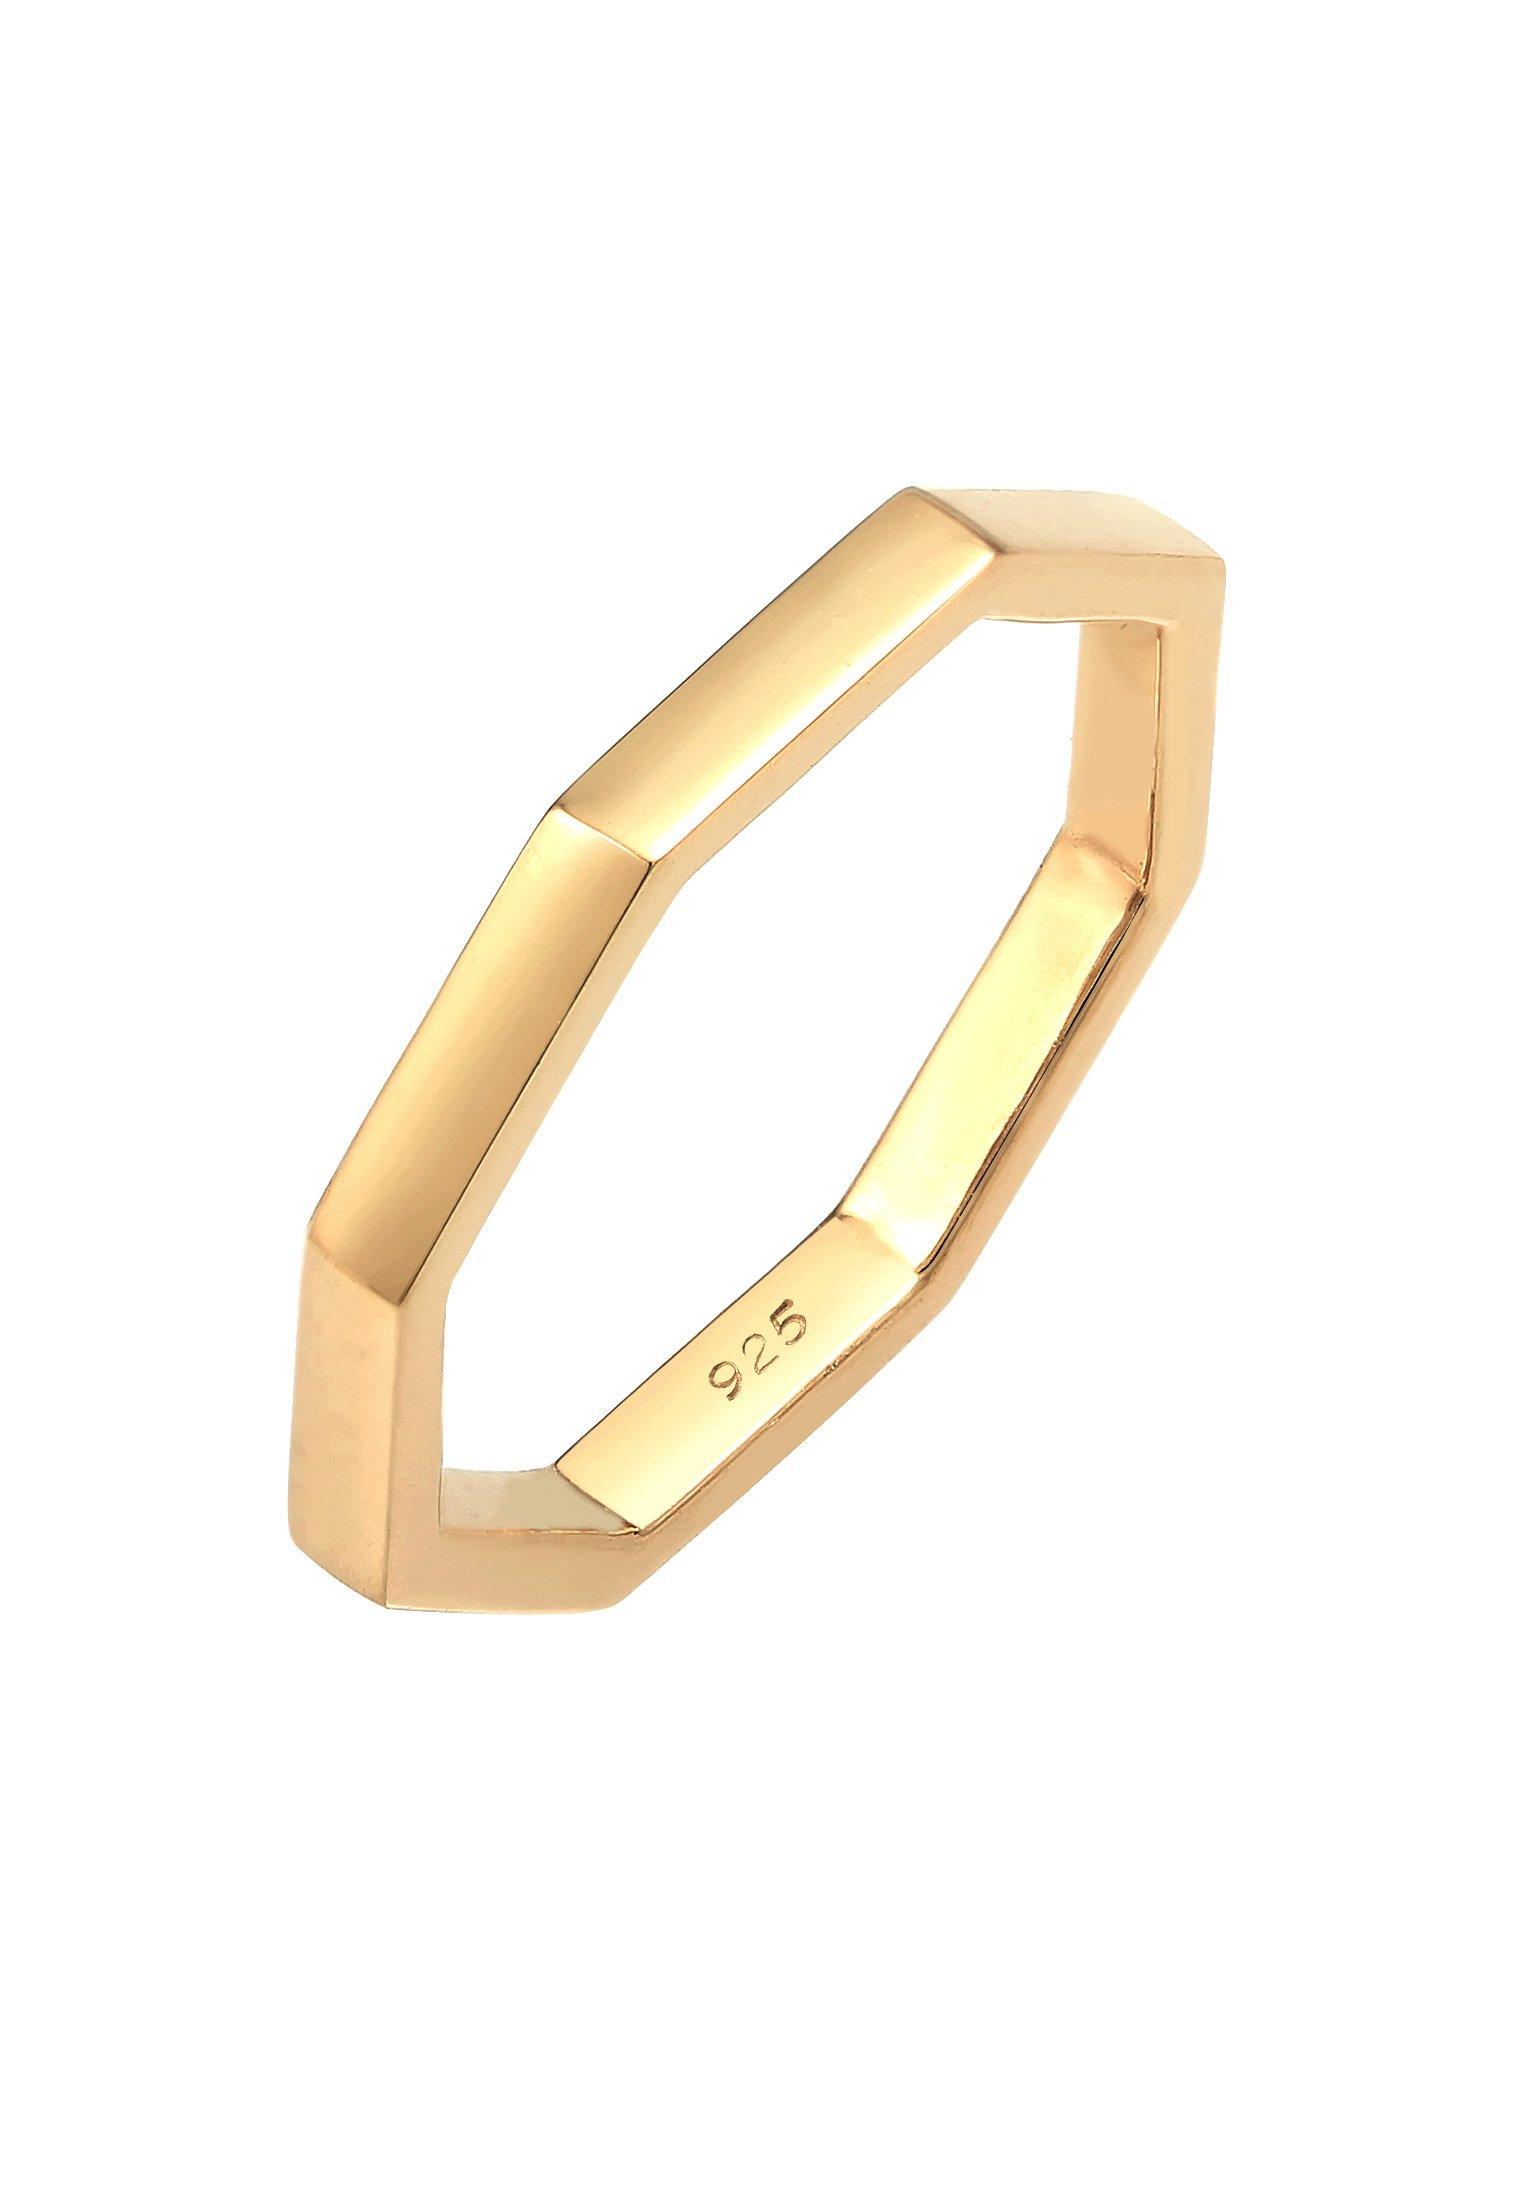 Ring Achteckform Basic Damen Gold 54mm von Elli